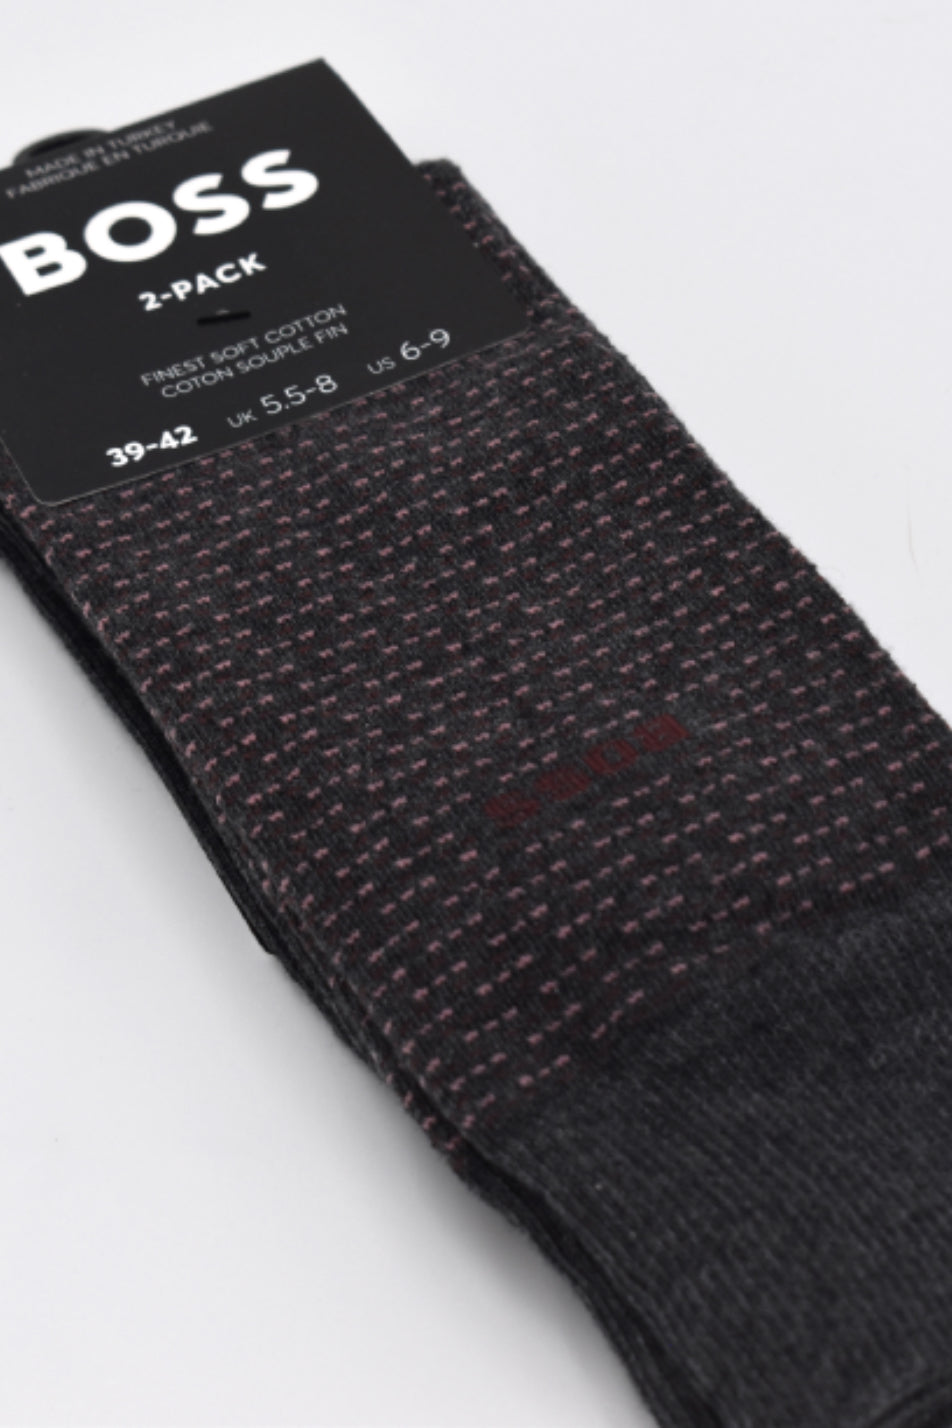 BOSS 2 Pack Men's Minipattern Sock